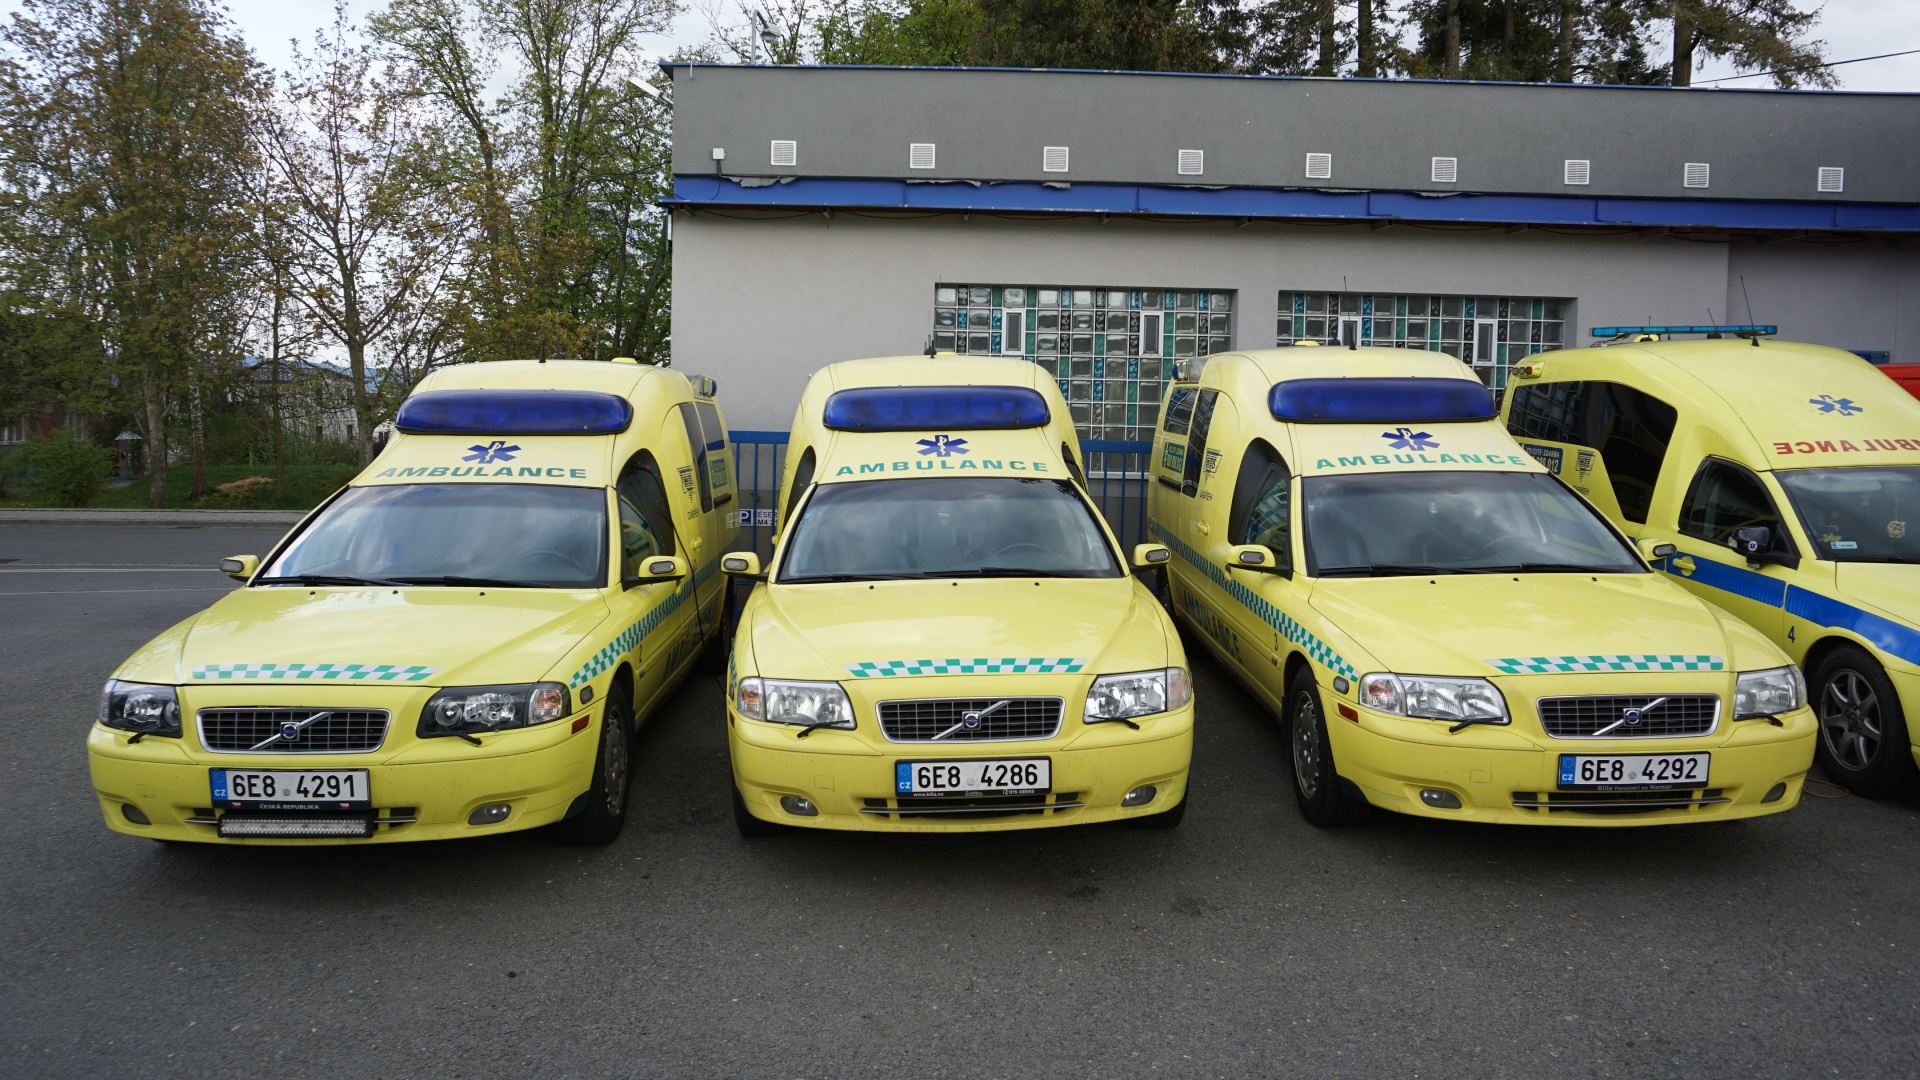 Dopravní zdravotní služba HTS - spolehlivá přeprava pacientů